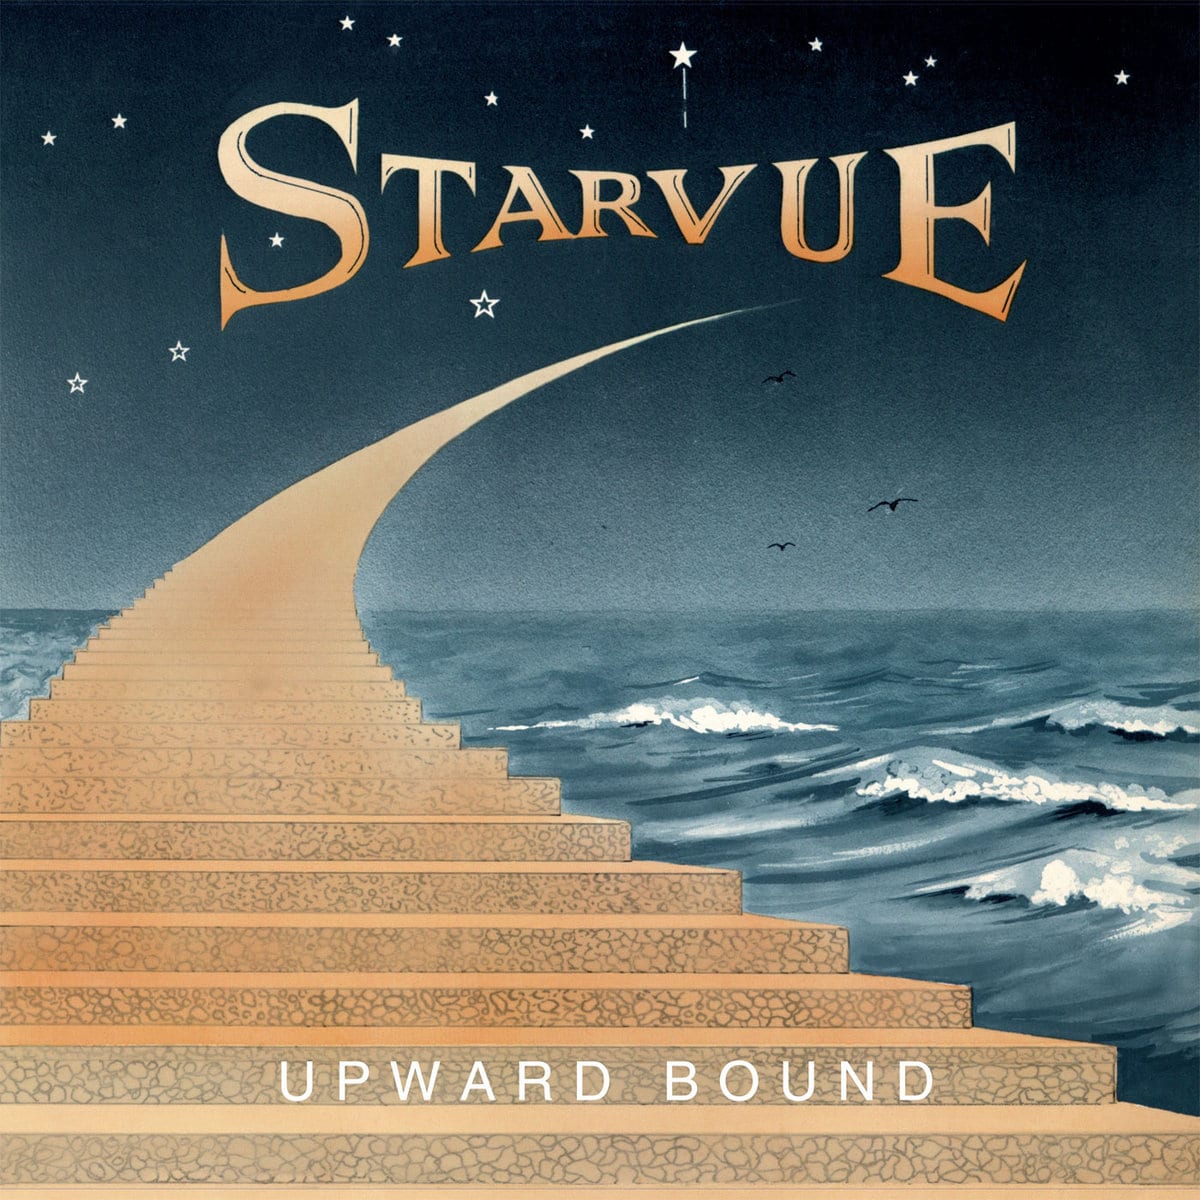 Starvue - Upward Bound - EVERLAND029 - EVERLAND